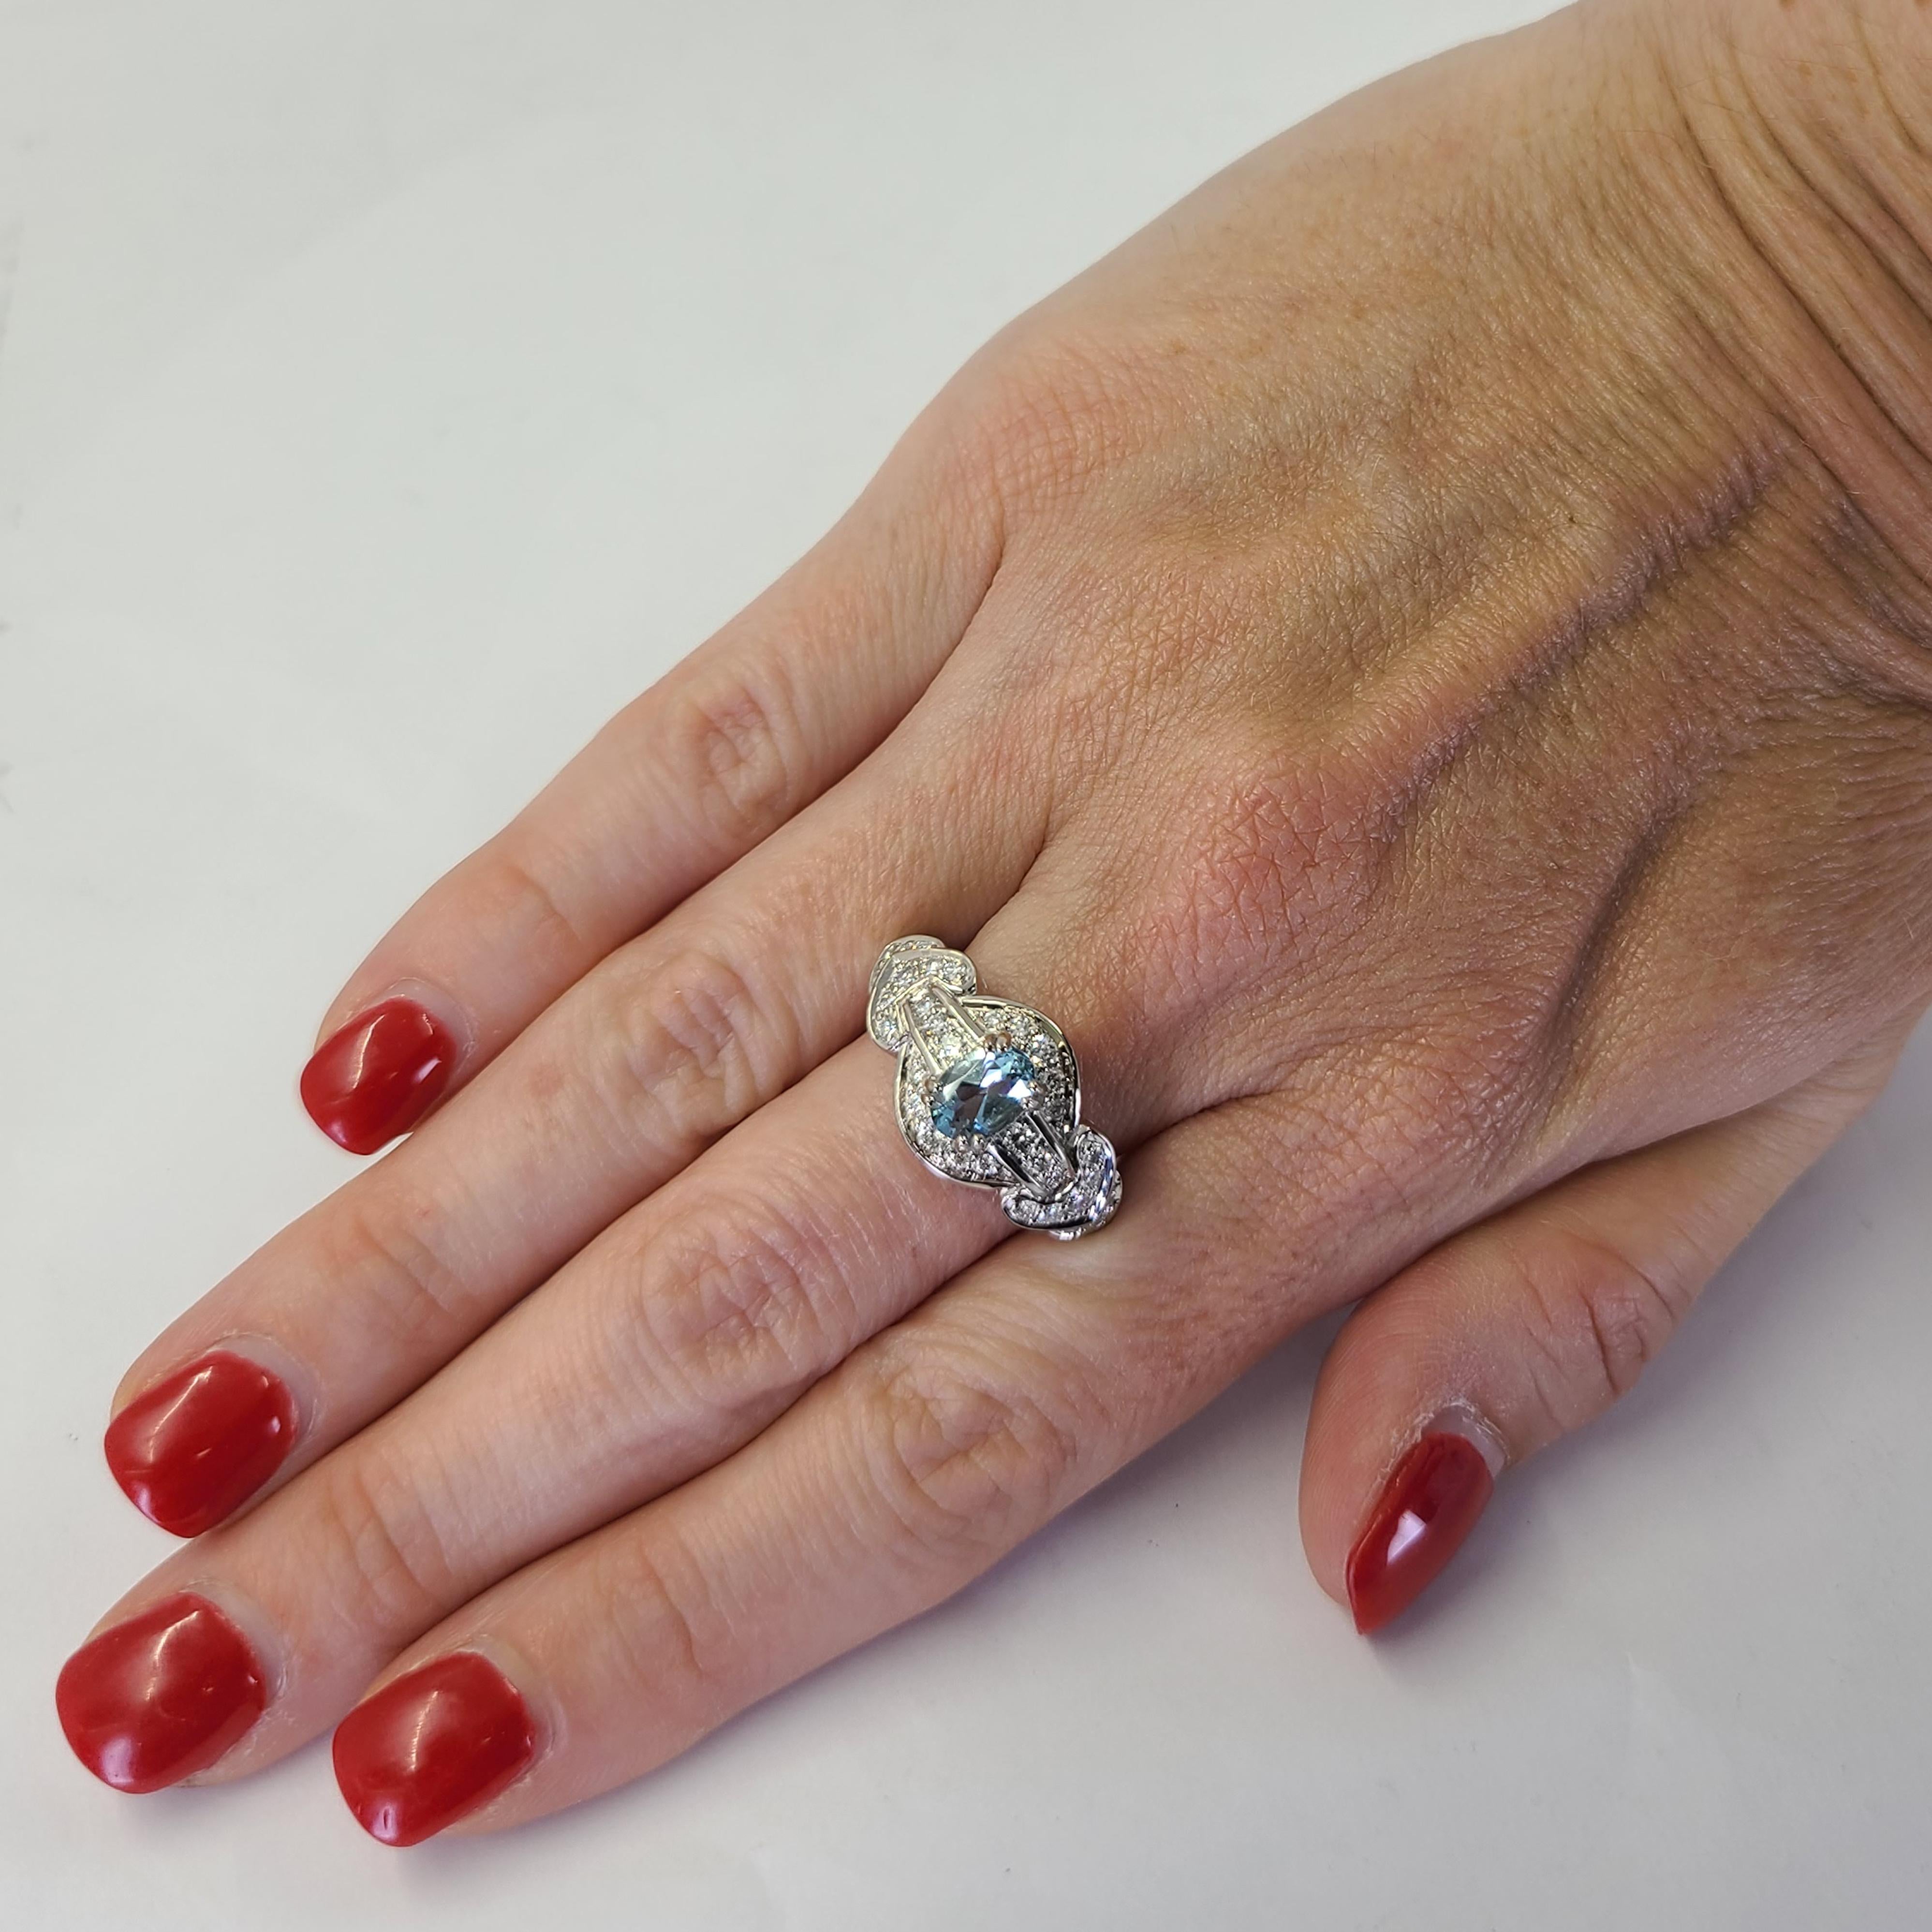 18 Karat Weißgold Ring mit einem 1,00 Karat Aquamarin im Ovalschliff, akzentuiert durch 32 runde Diamanten im Brillantschliff mit einer Reinheit von VS und einer Farbe von G von insgesamt 1,00 Karat. Fingergröße 8.5; Der Kauf beinhaltet einen